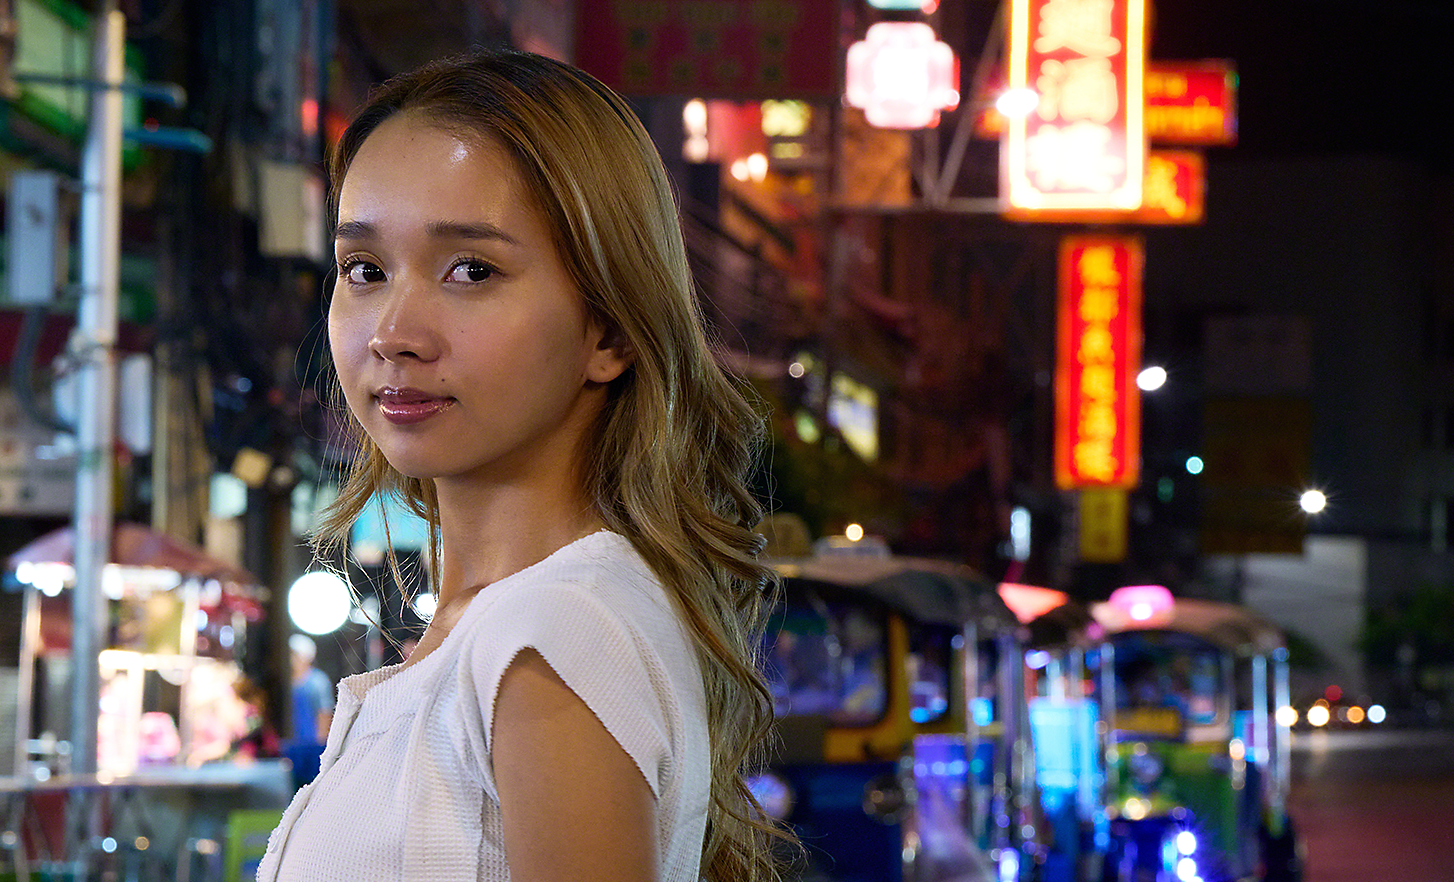 Retrato de una mujer joven en la calle de una ciudad ajetreada de noche